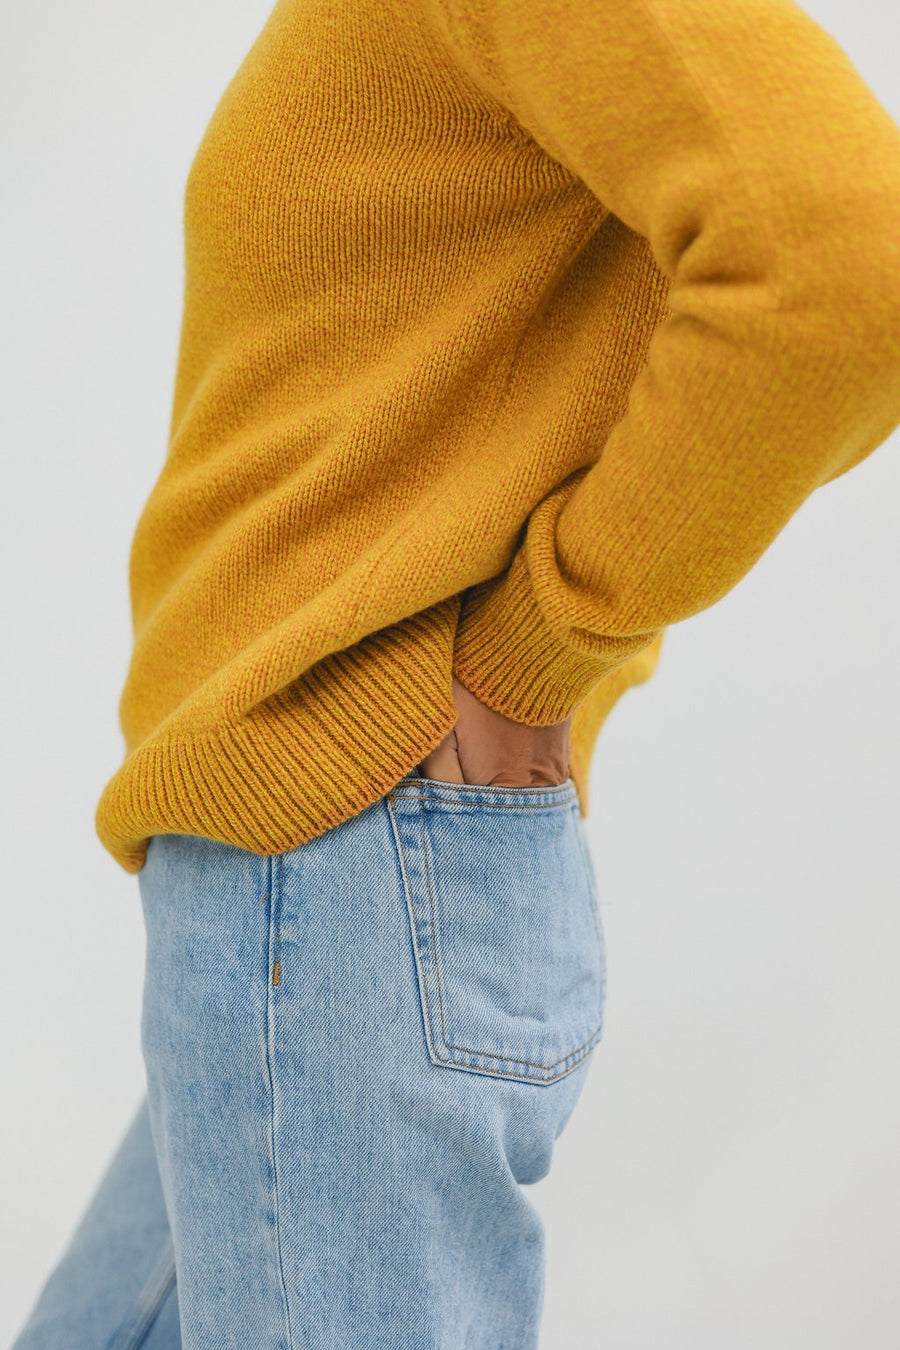 Daffodil Sweater Yellow